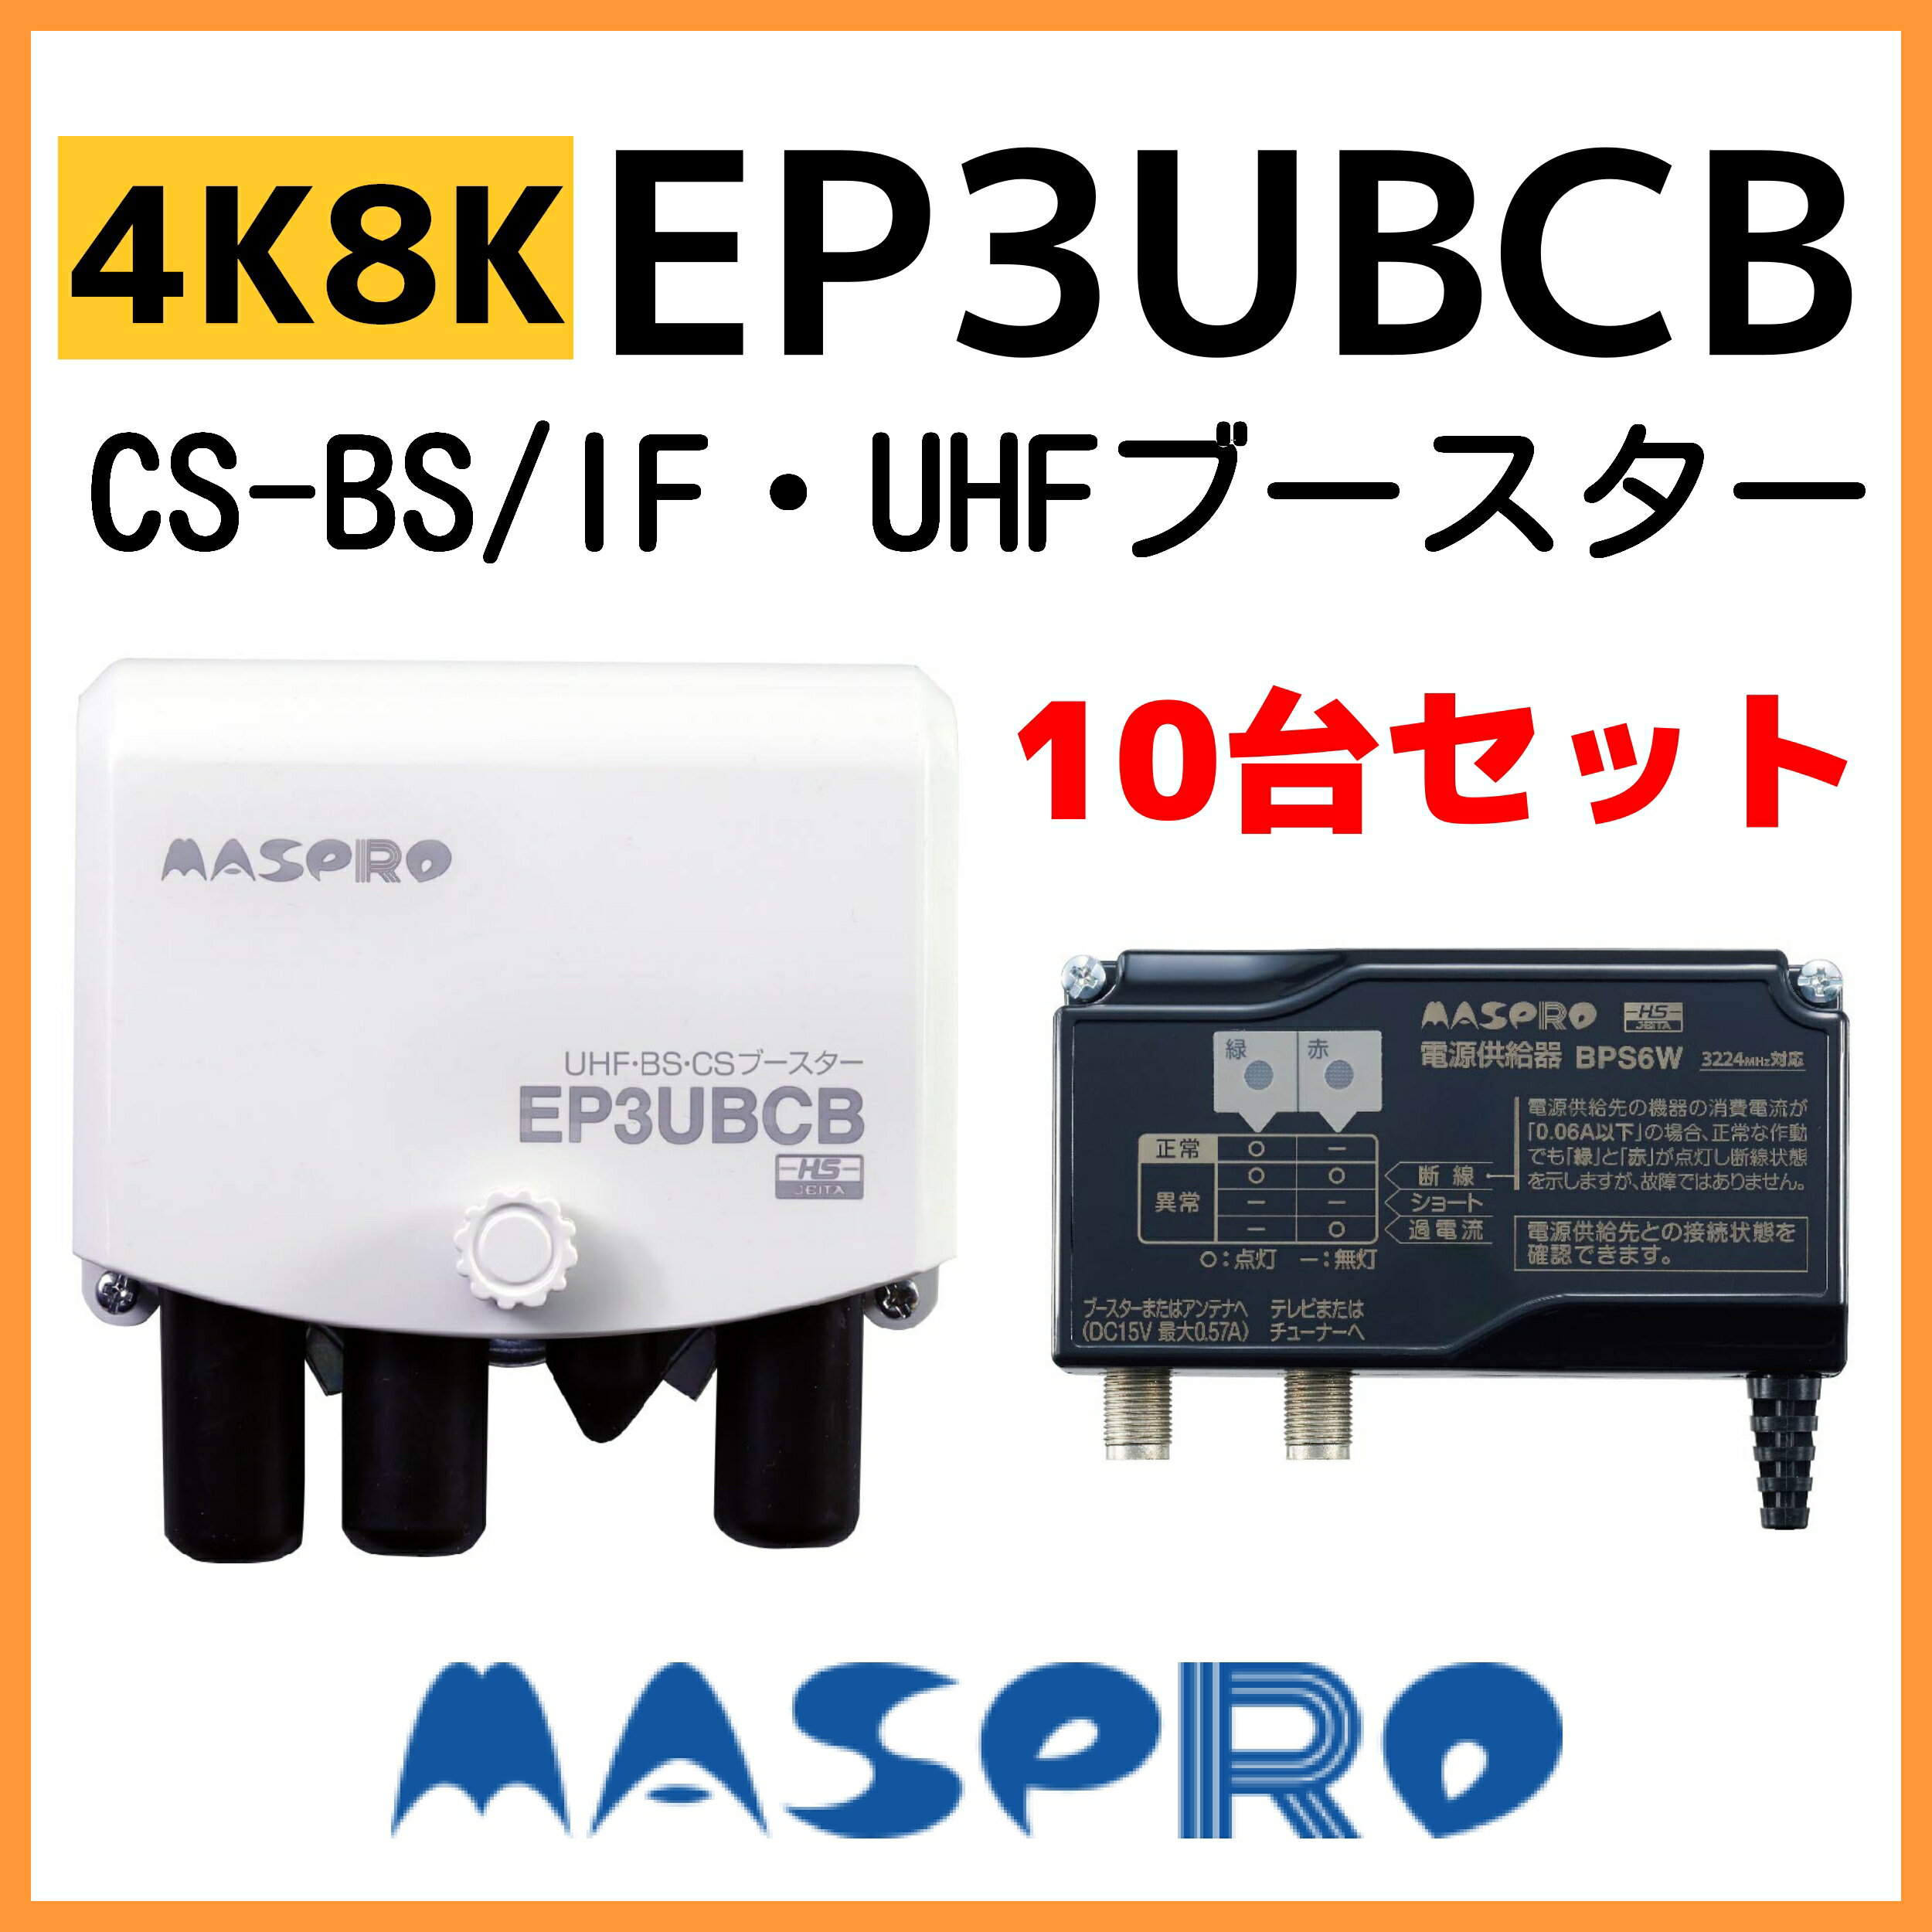 ޥץ UHF/BS(CS) ֡ EP3UBCB4K8Kб10楻å